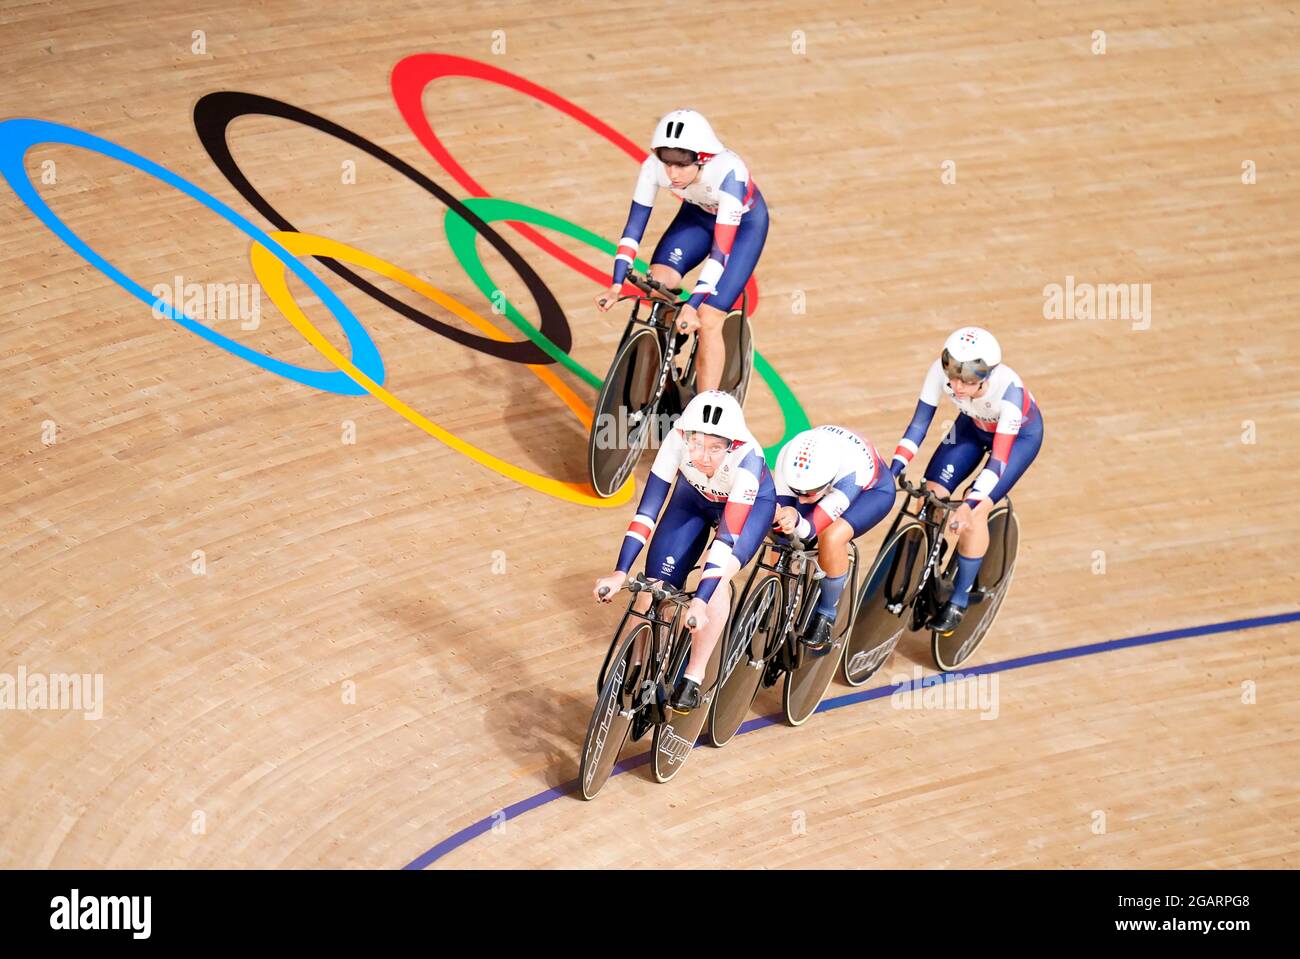 L'équipe de Grande-Bretagne lors d'une séance d'entraînement à vélo sur piste au vélodrome d'Izu, le neuvième jour des Jeux Olympiques de Tokyo en 2020 au Japon. Date de la photo: Dimanche 1er août 2021. Banque D'Images